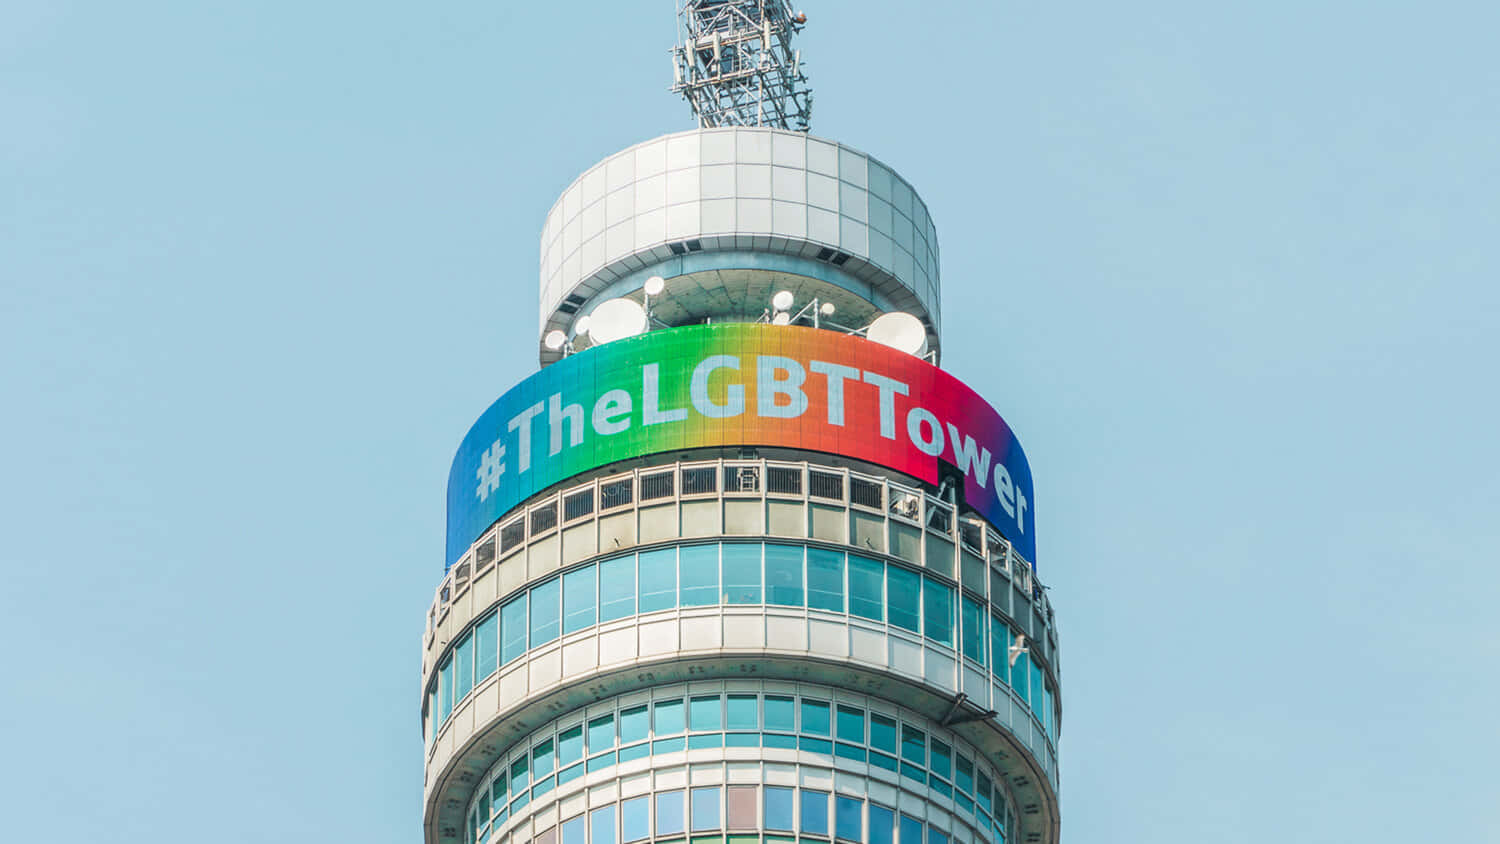 LGBT BT Tower Wallpaper